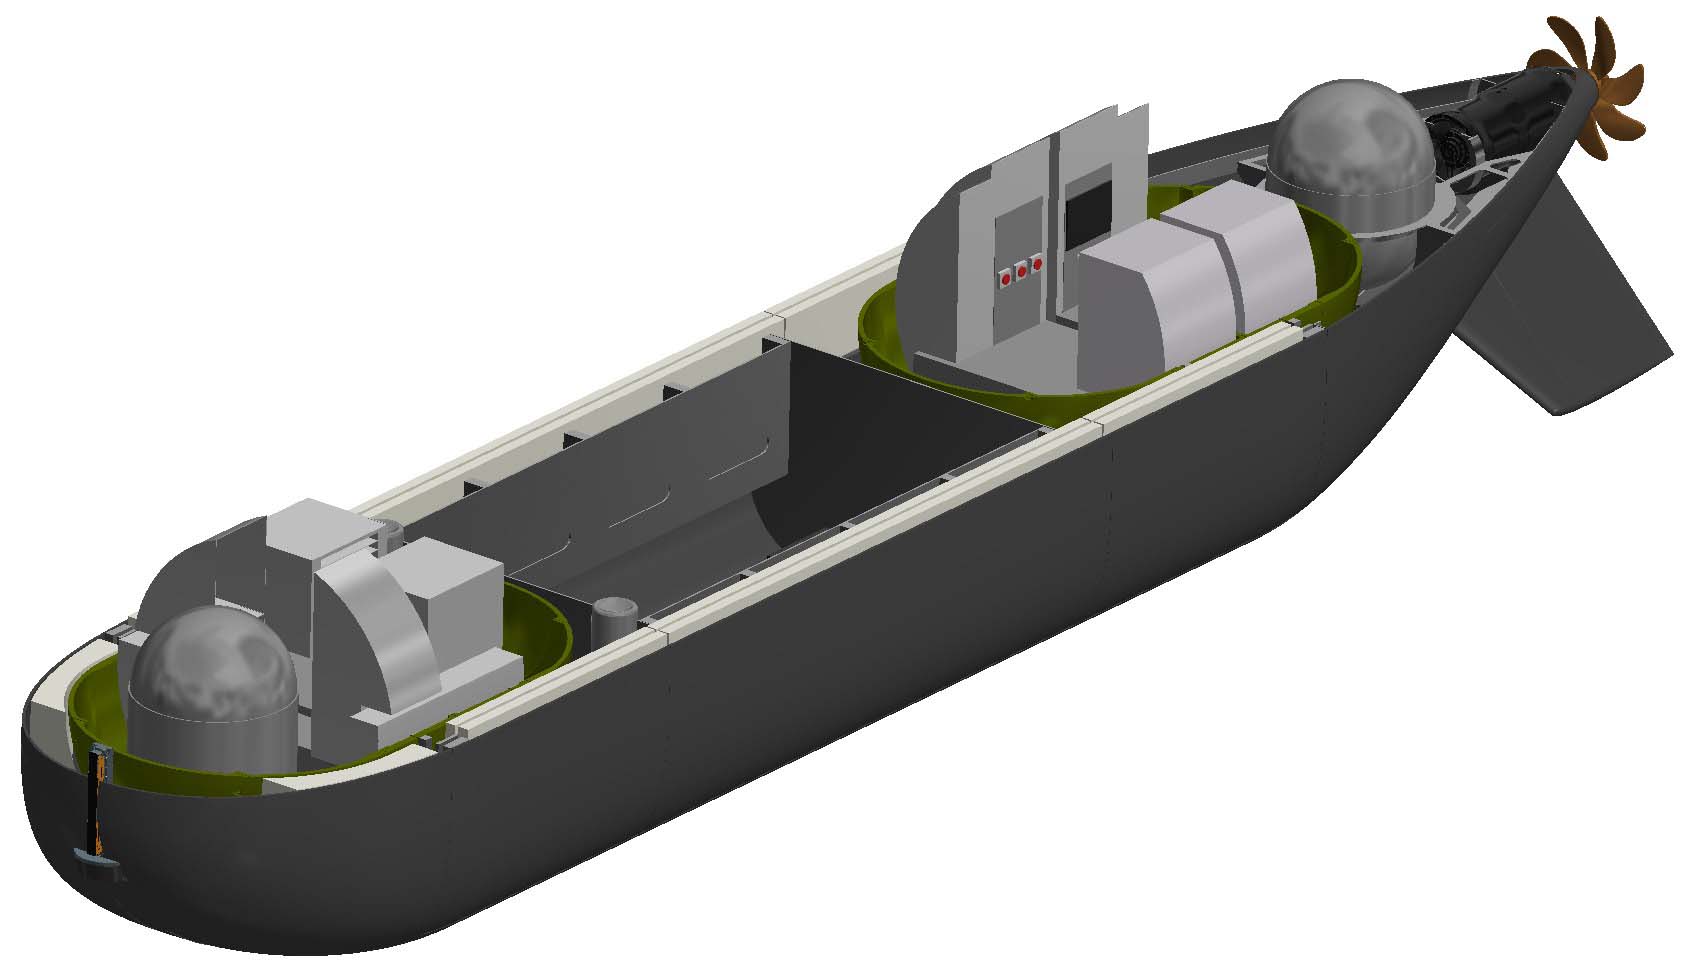 Royal Navy orders first crewless submarine to dominate underwater battleground